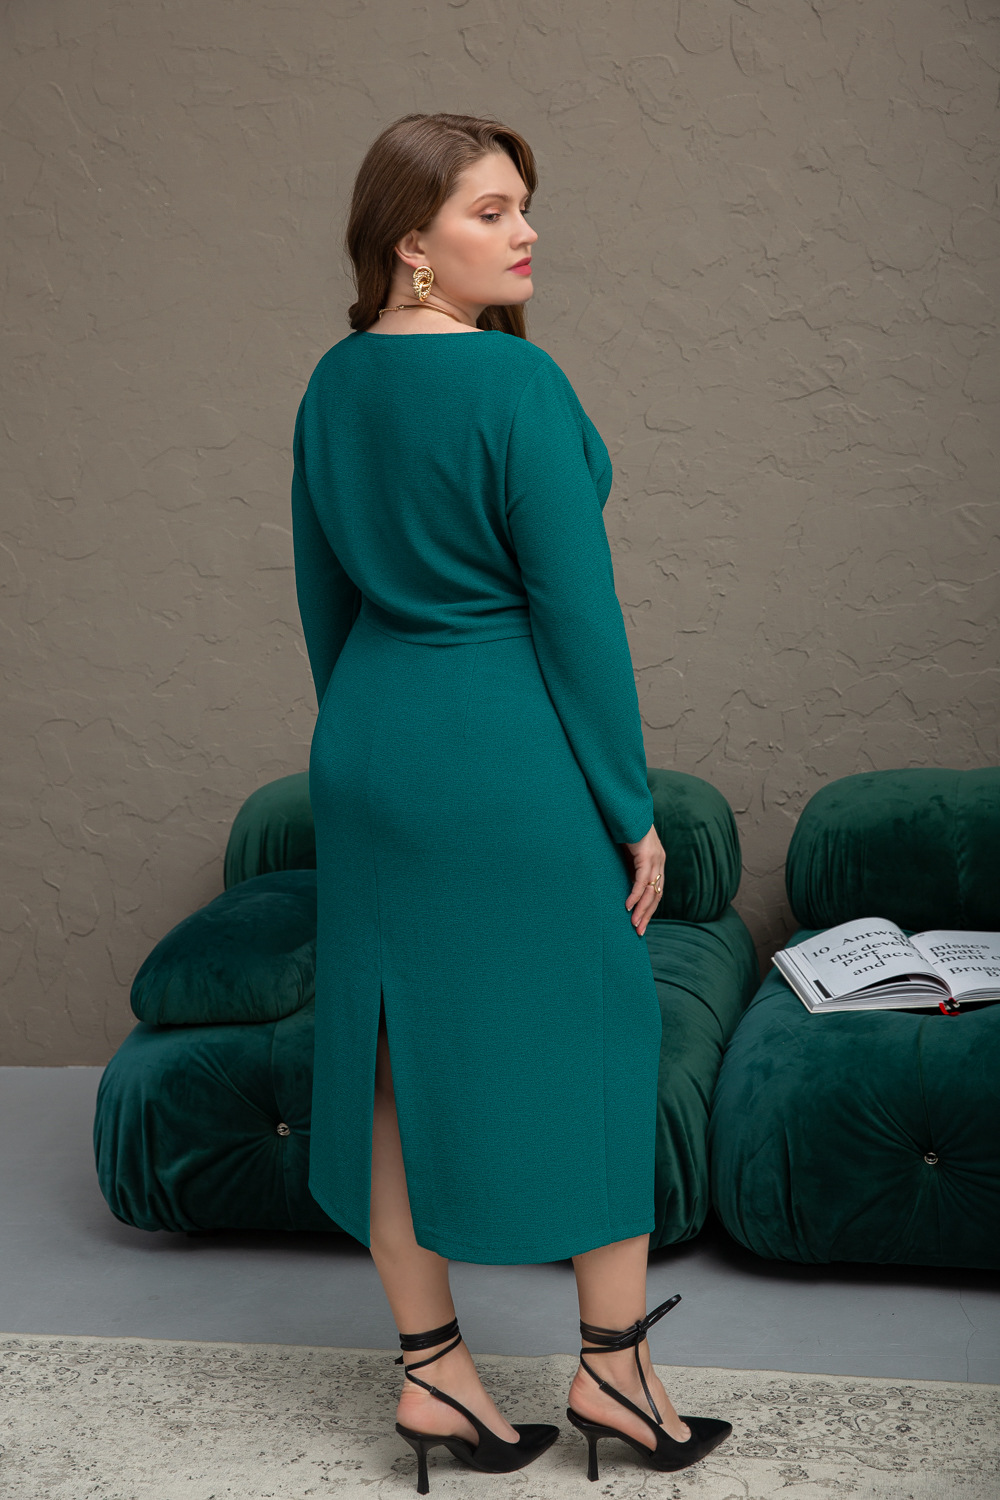 Густаво, олуприлегающее платье миди из мягкого трикотажа зернистой фактуры с асимметричными складочками, на плече и в боковом шве, 2 цвета от Ритини